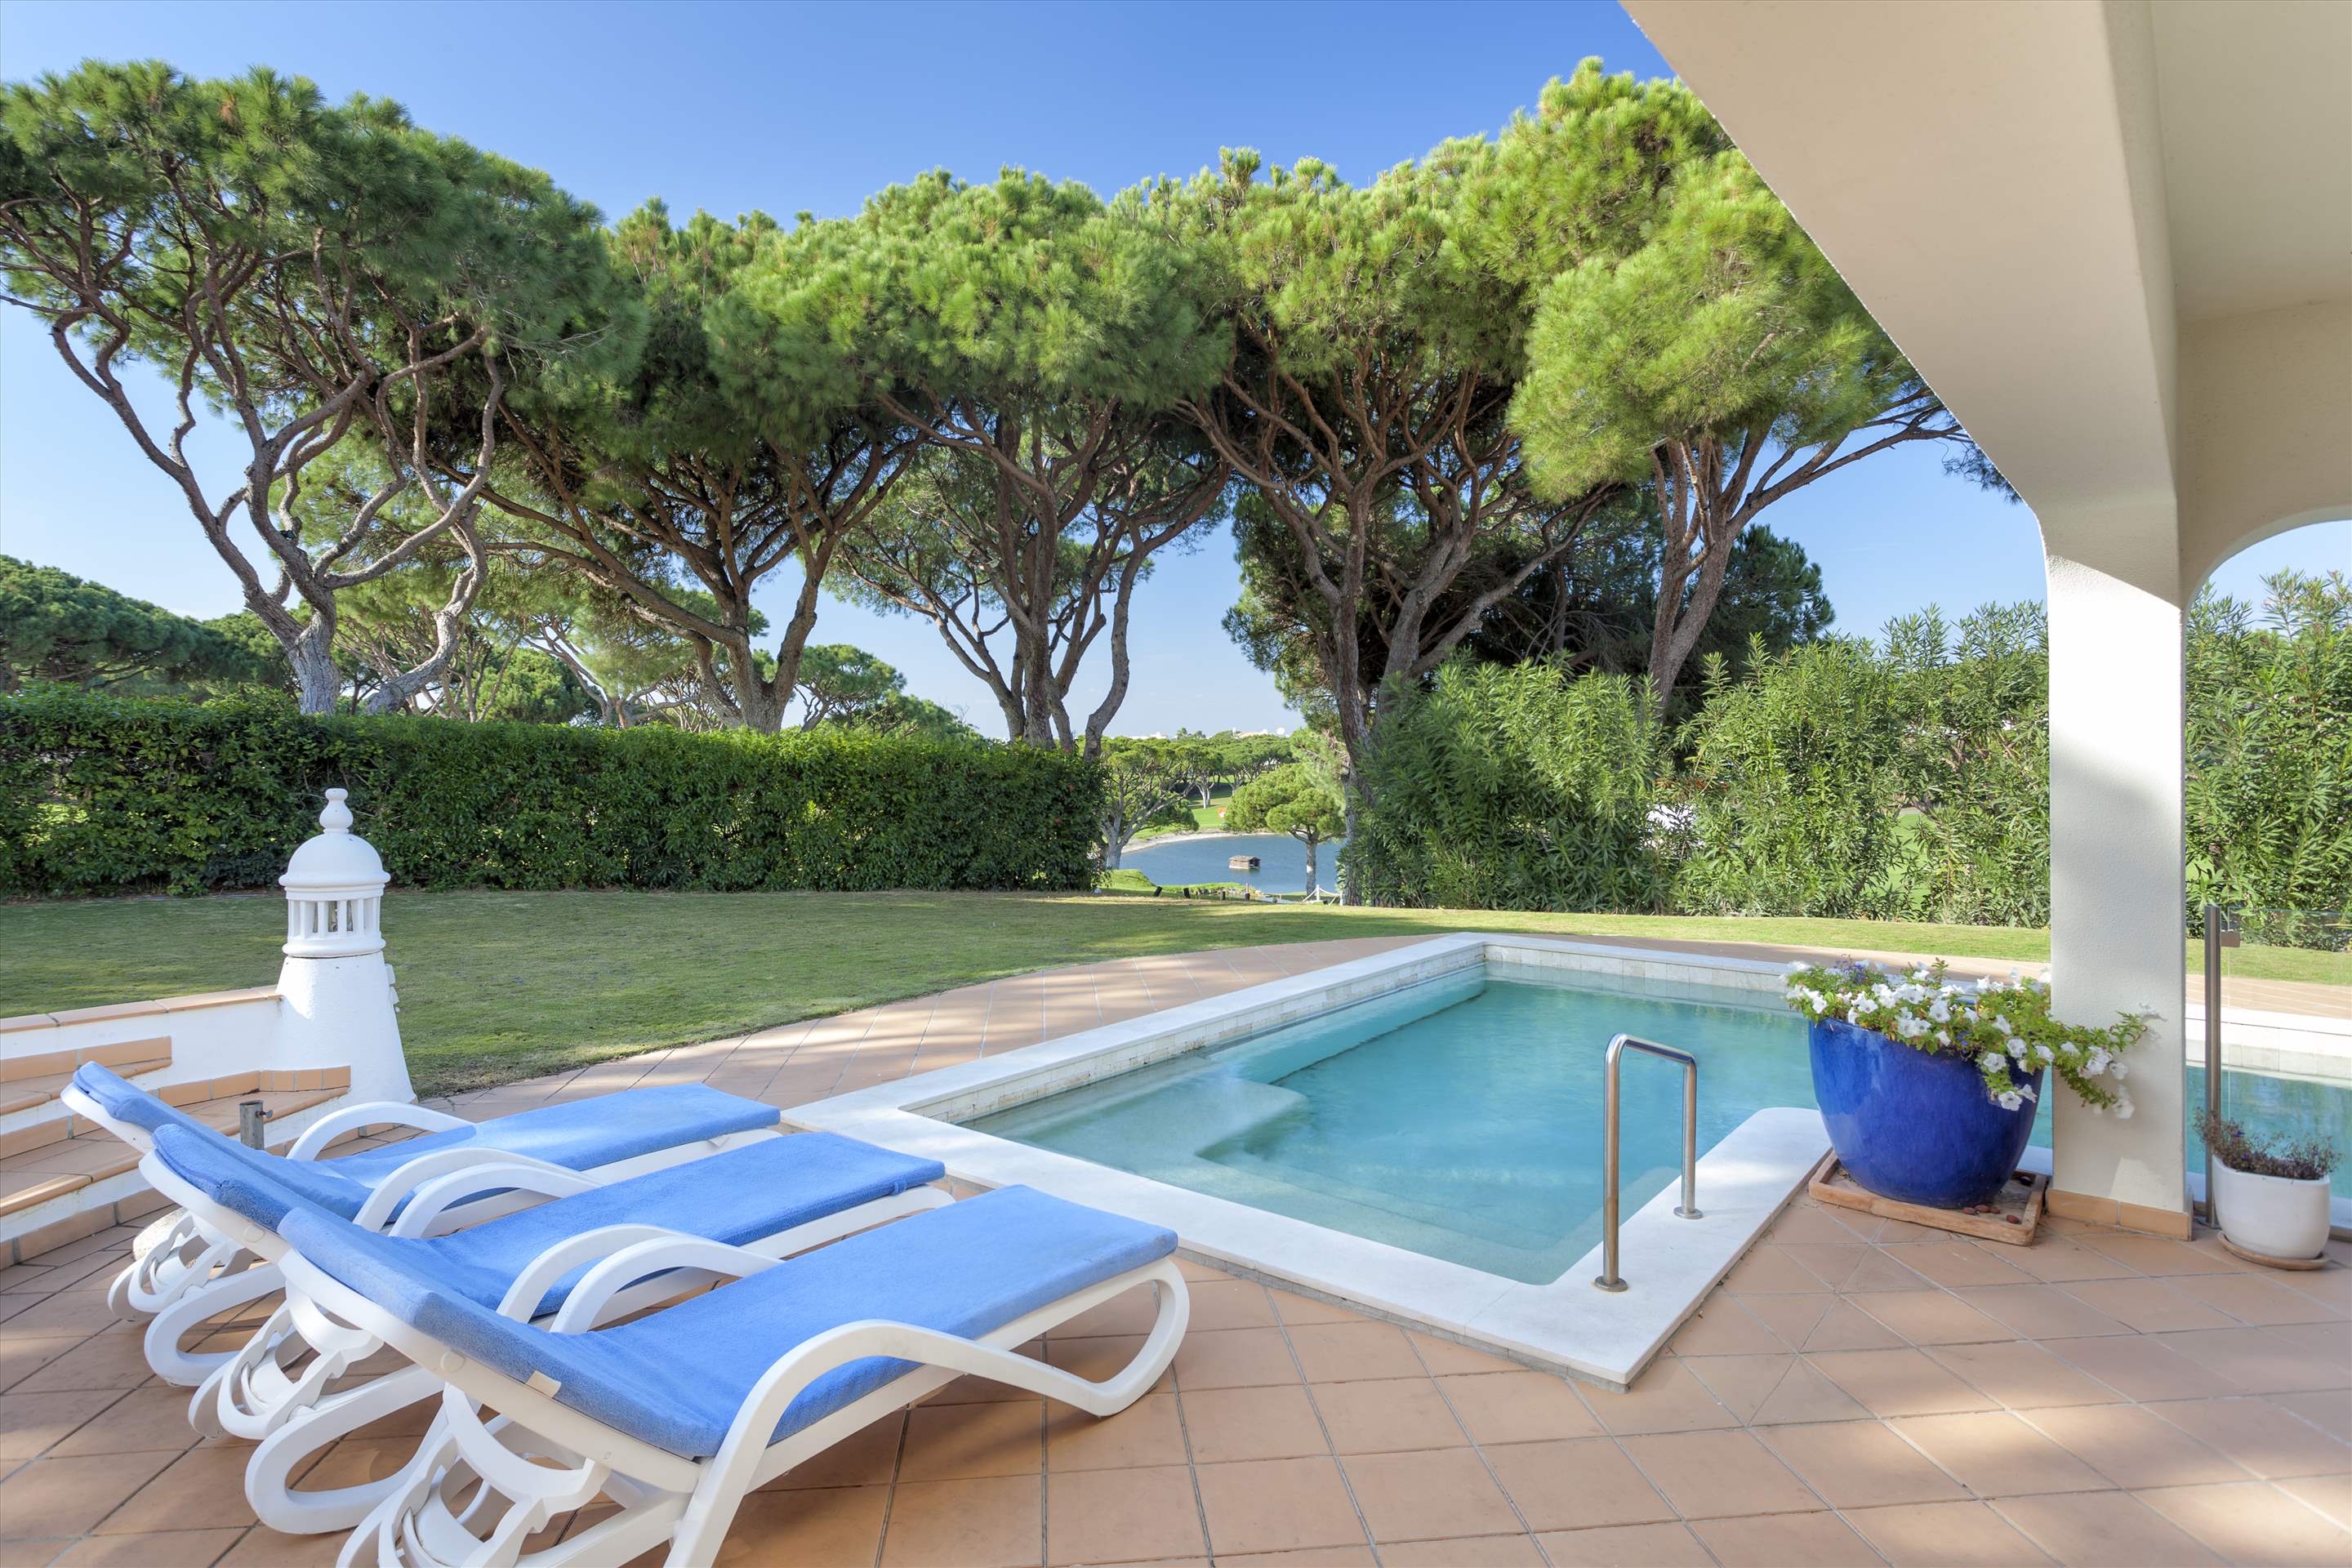 Villa Cascata, 4 Bedroom, 4 bedroom villa in Vale do Lobo, Algarve